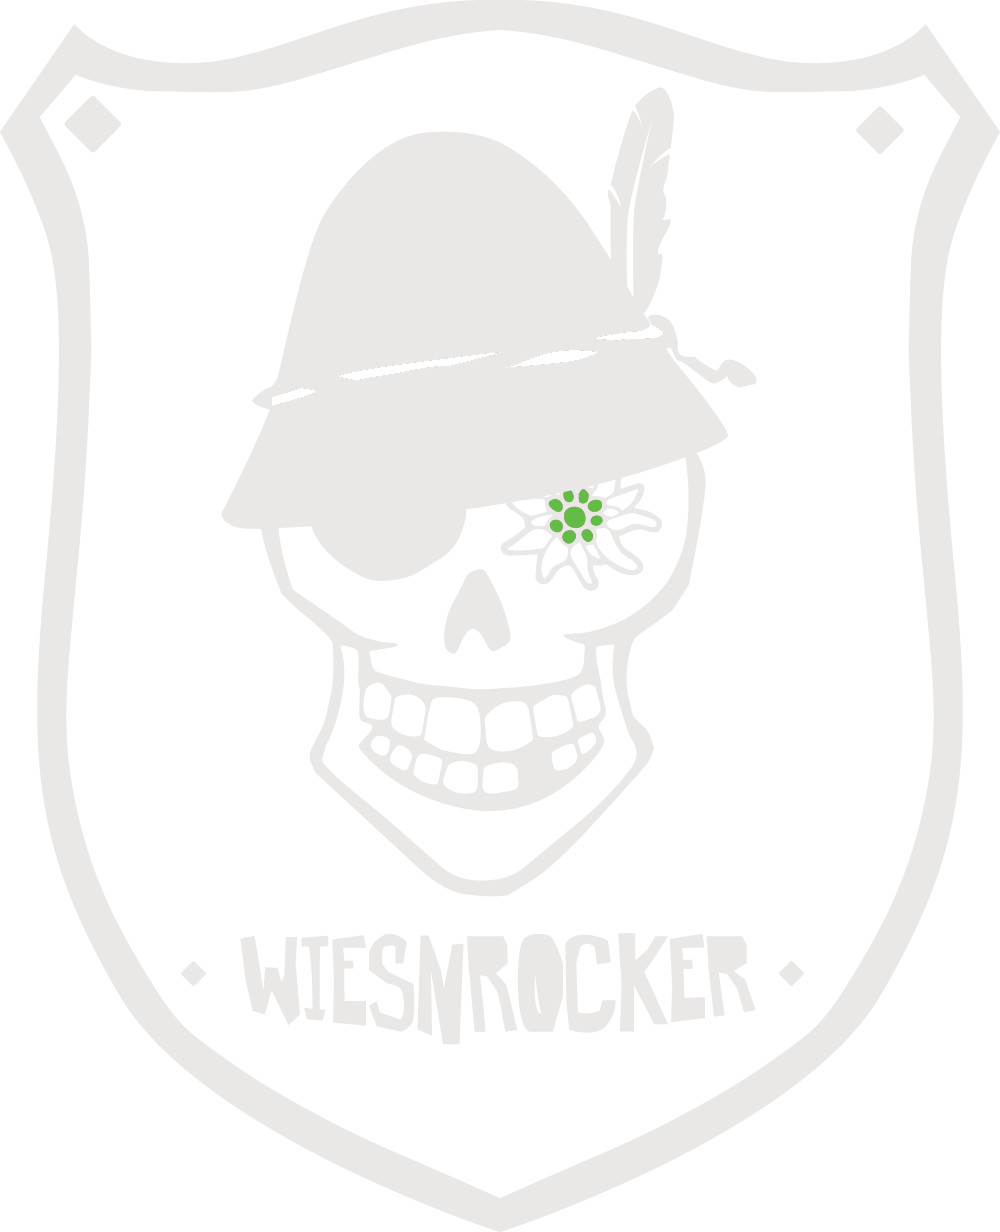 (c) Wiesnrocker.com